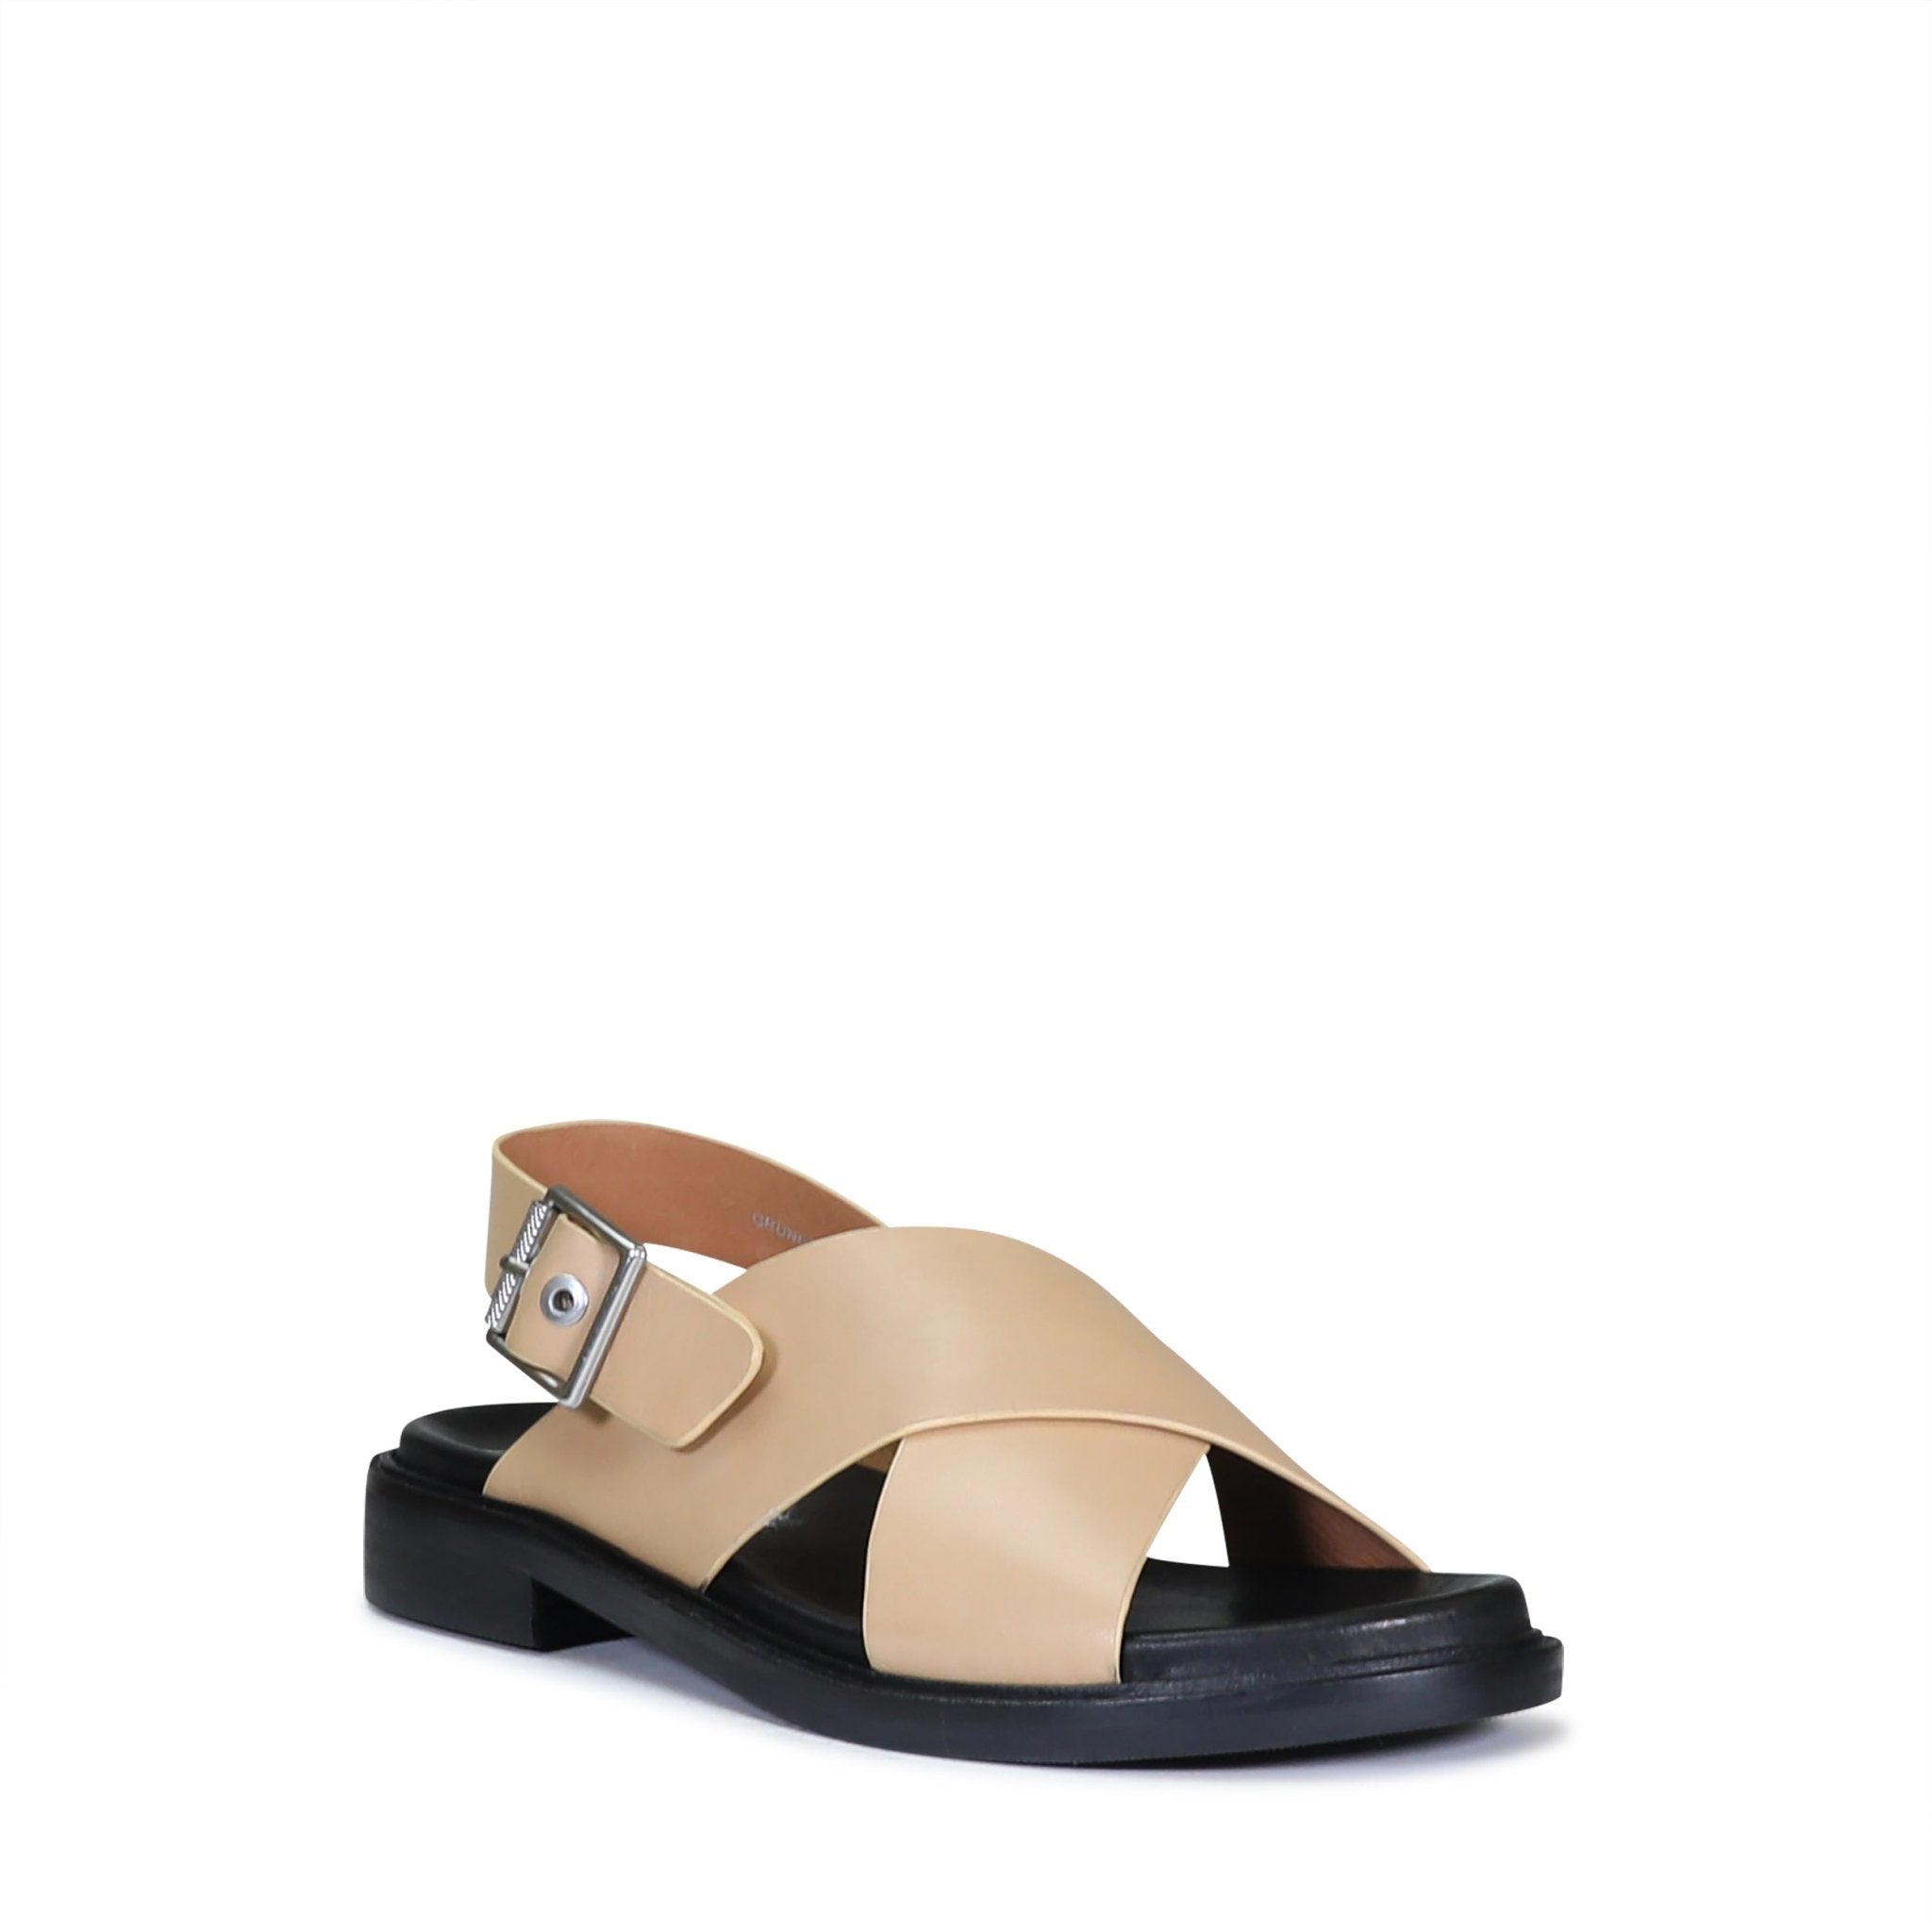 GRUNGE - EOS Footwear - Sling Back Sandals #color_tan